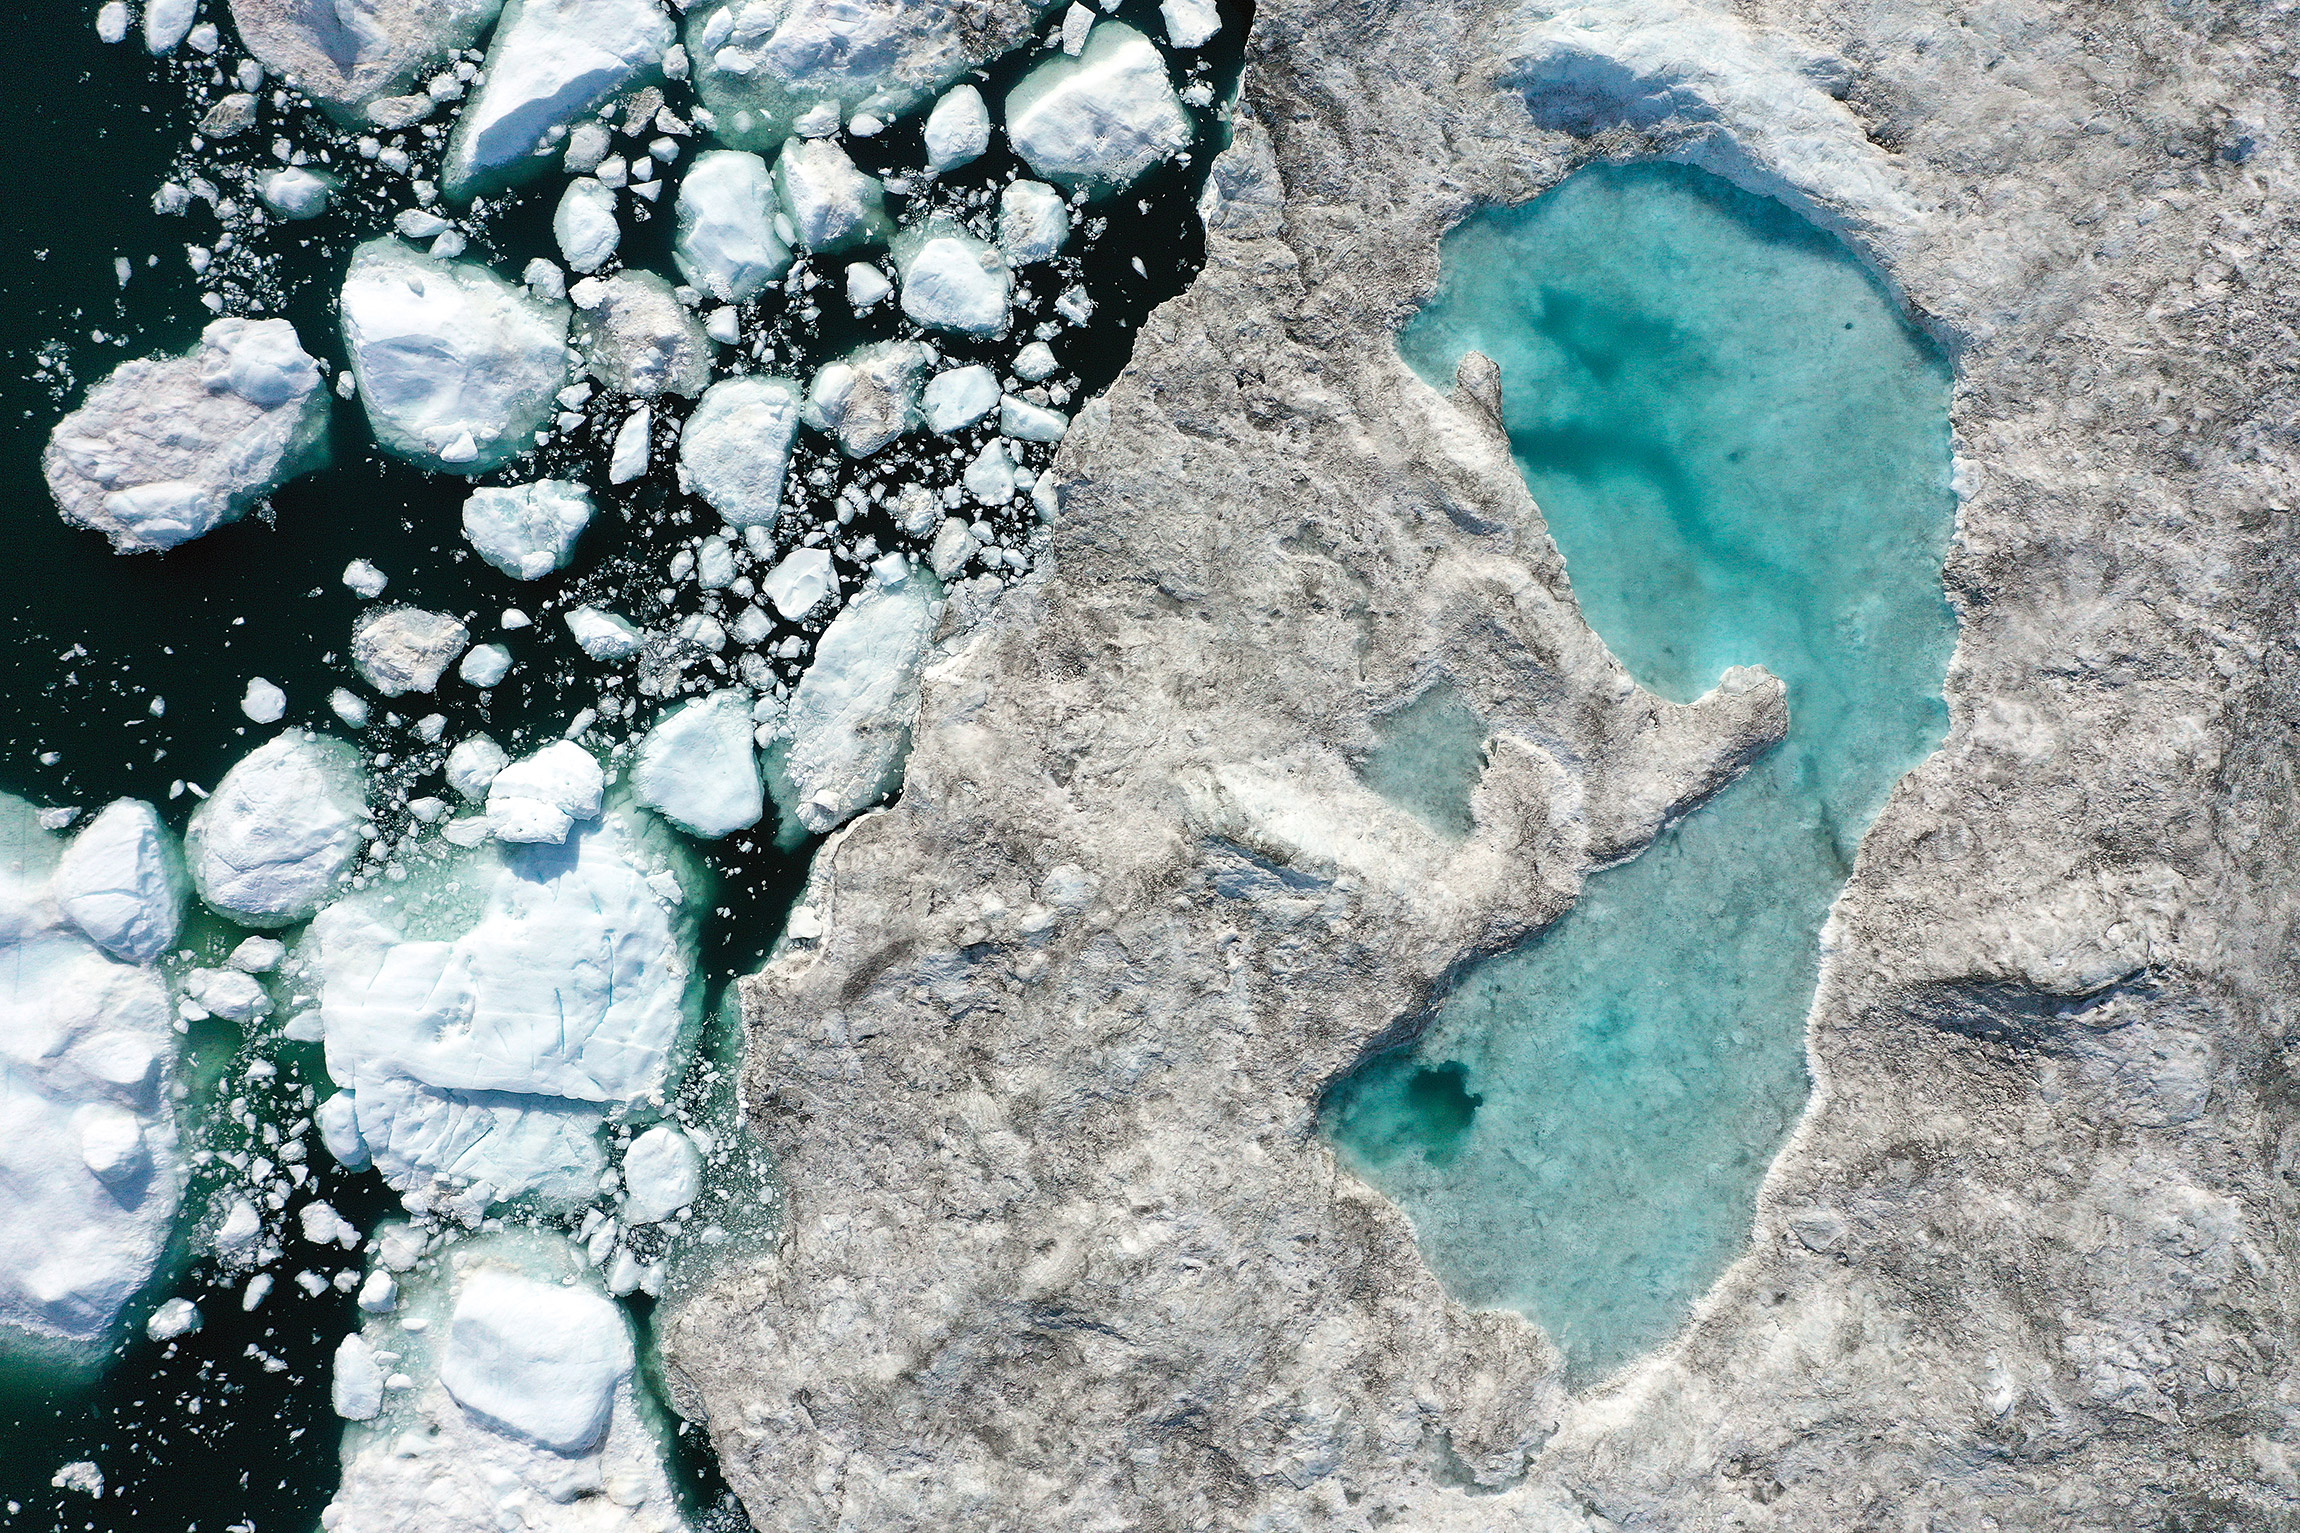 30 июля, Илулиссат, Гренландия. Из-за аномально&nbsp;теплой погоды&nbsp;в тающем&nbsp;льду образовалось озеро
